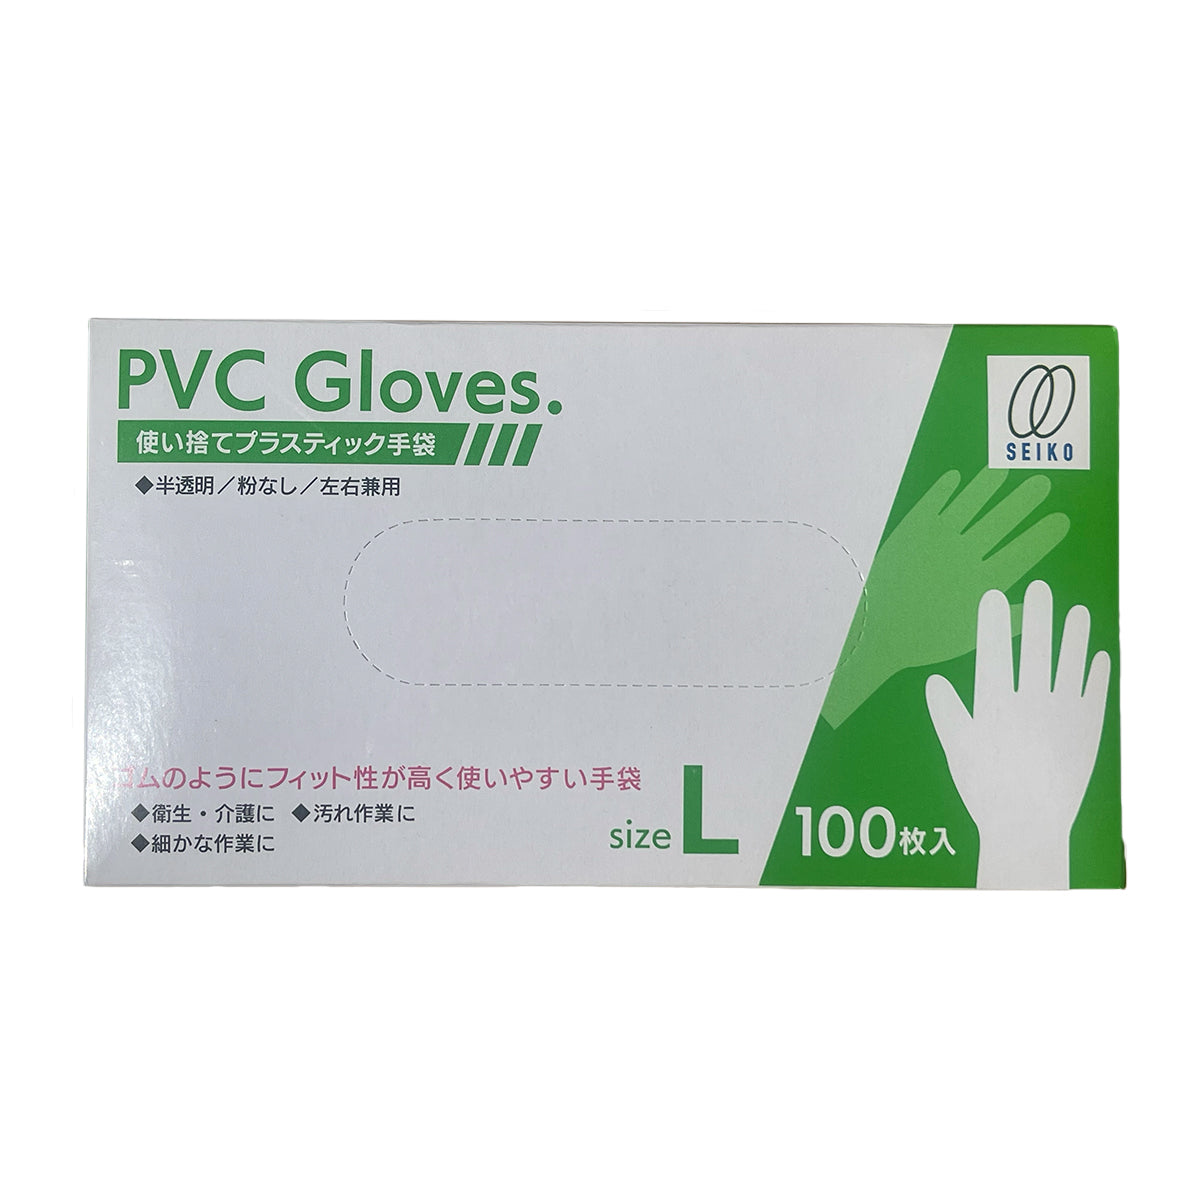 【プラスチック手袋】静光産業 PVCプラスチック手袋 100枚入 L 透明